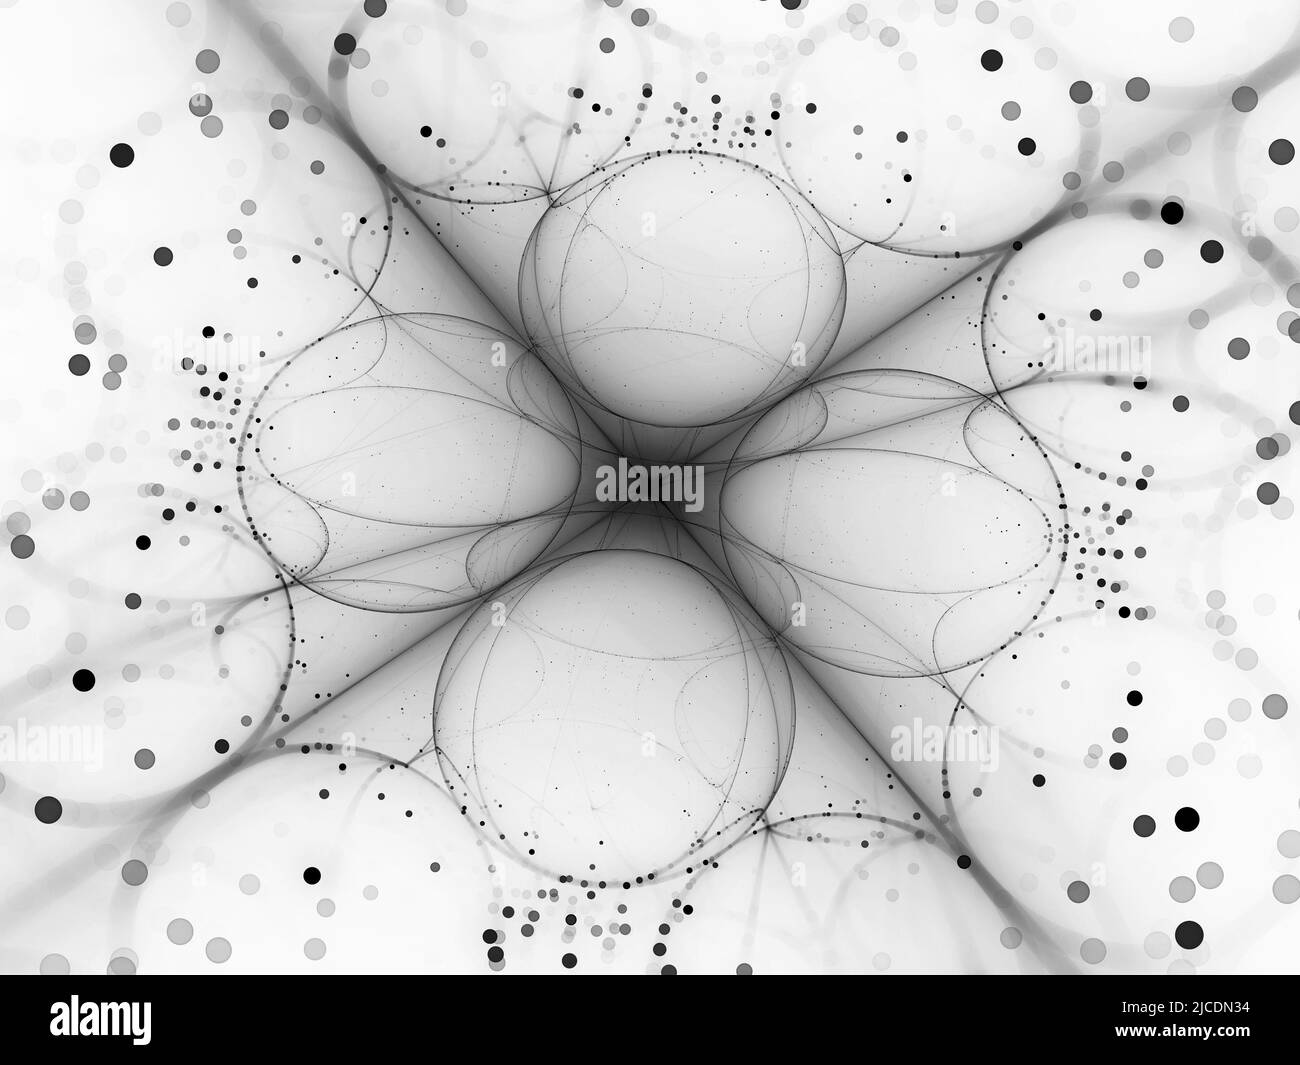 Processeur quantique futuriste, carte d'intensité inversée abstraite générée par ordinateur, noir et blanc, rendu 3D Banque D'Images